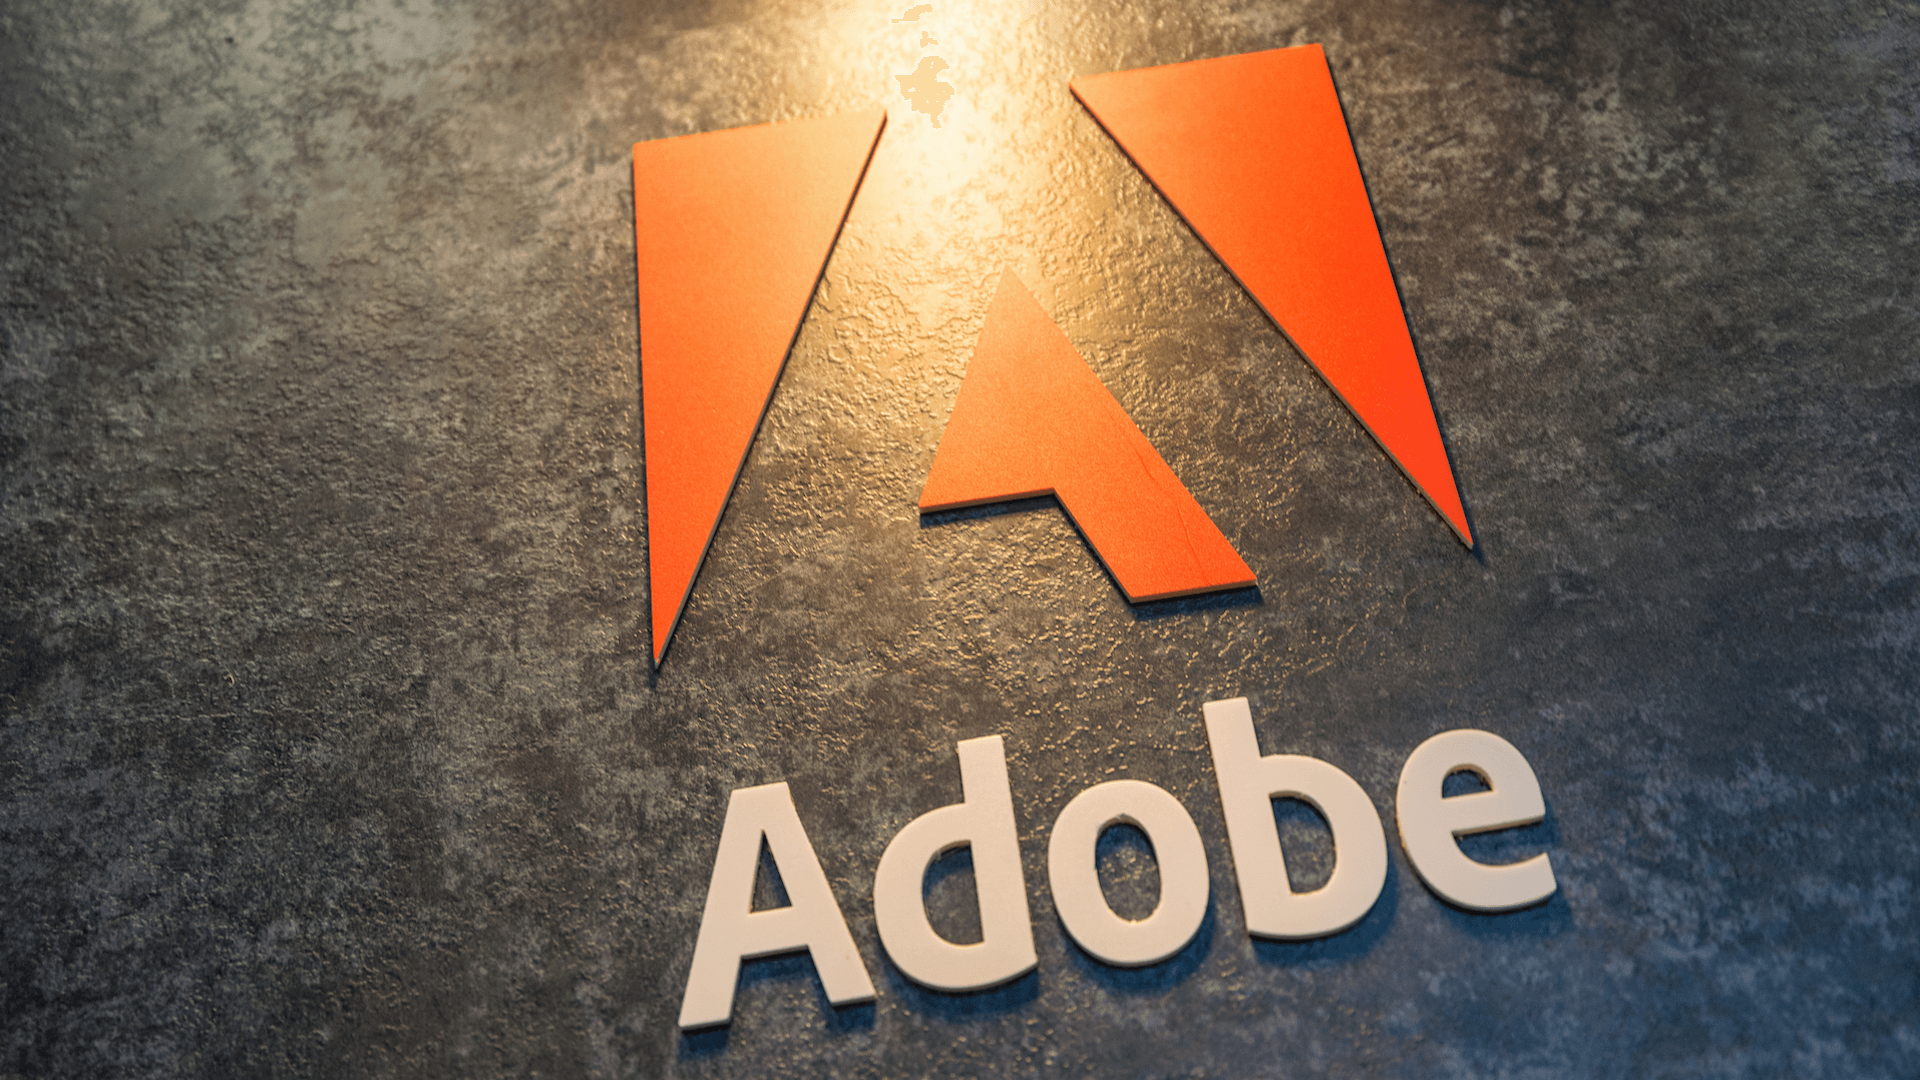 Adobe 23 сентября 2021 опубликует финансовый отчёт. Стоит ли покупать акции сверхприбыльной компании?